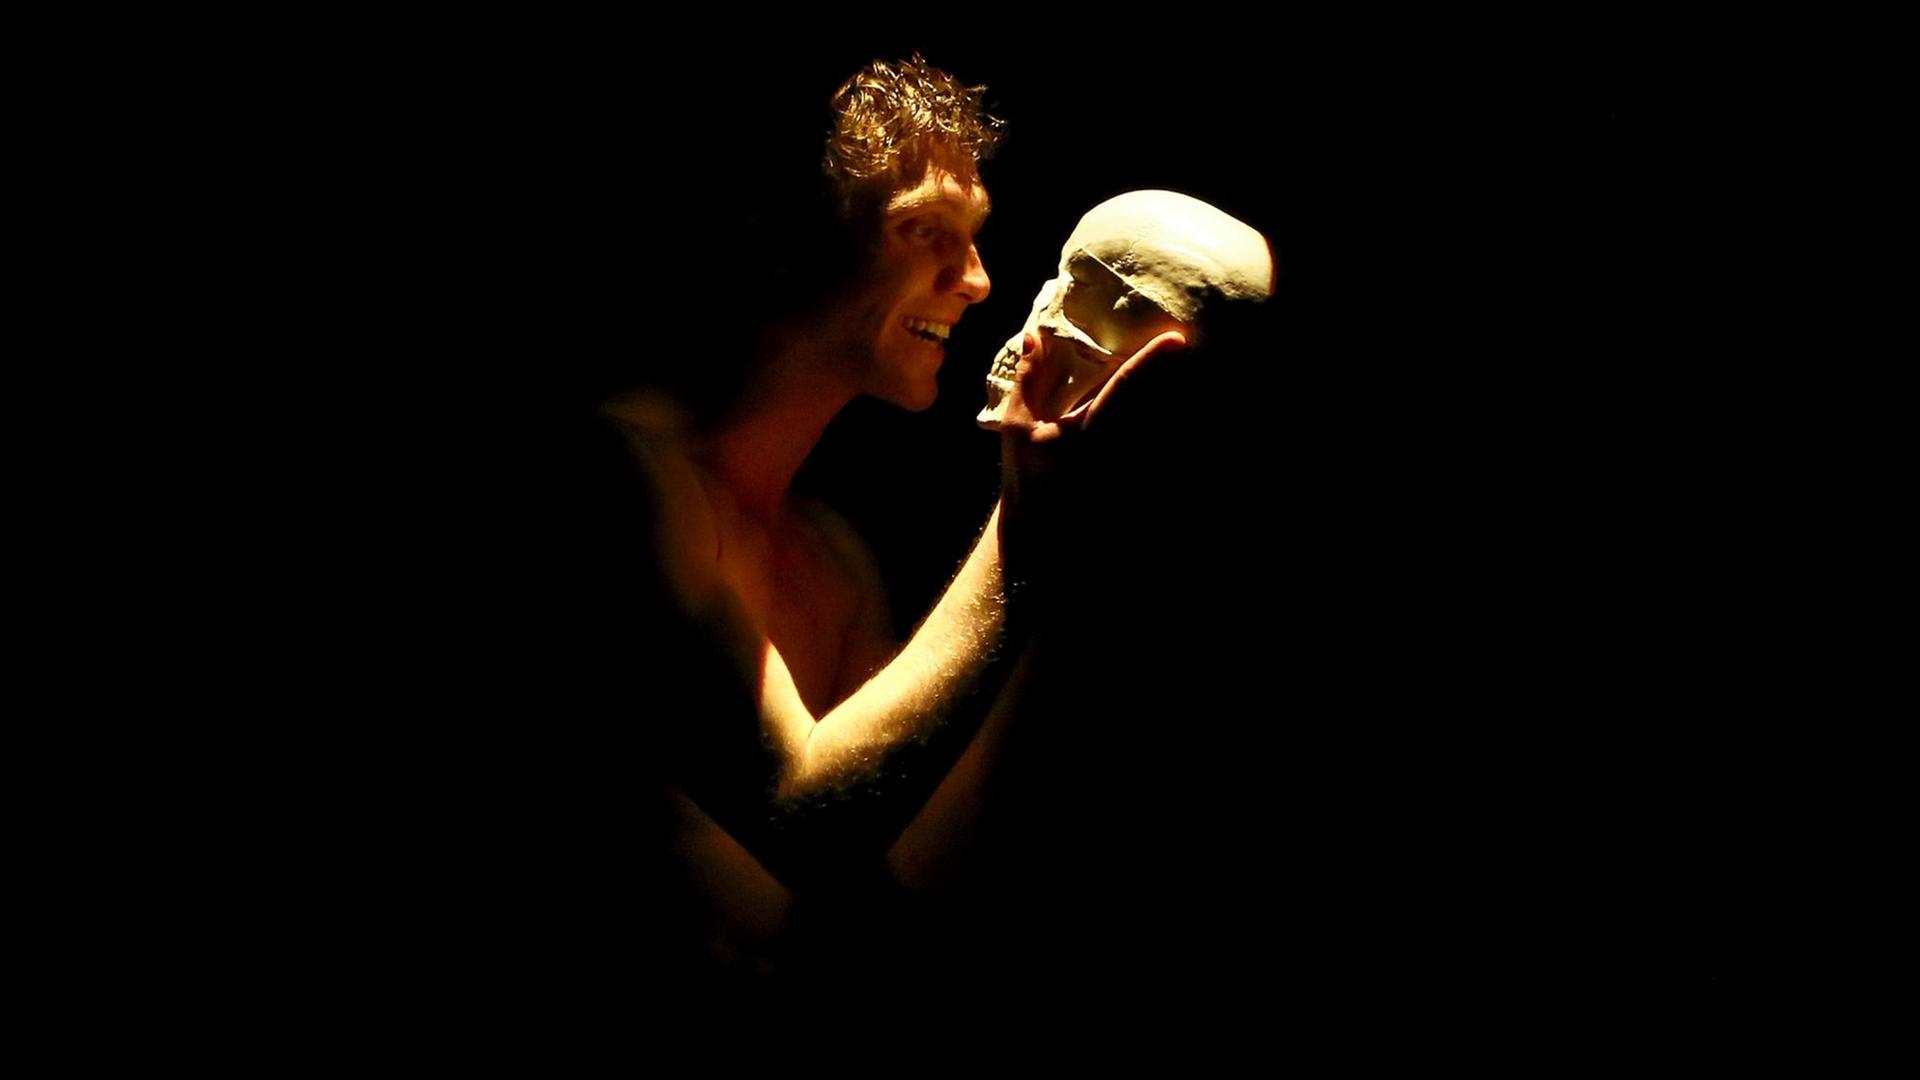 Johannes Nussbaum als Hamlet steht auf der Bühne und hält einen Totenkopf.